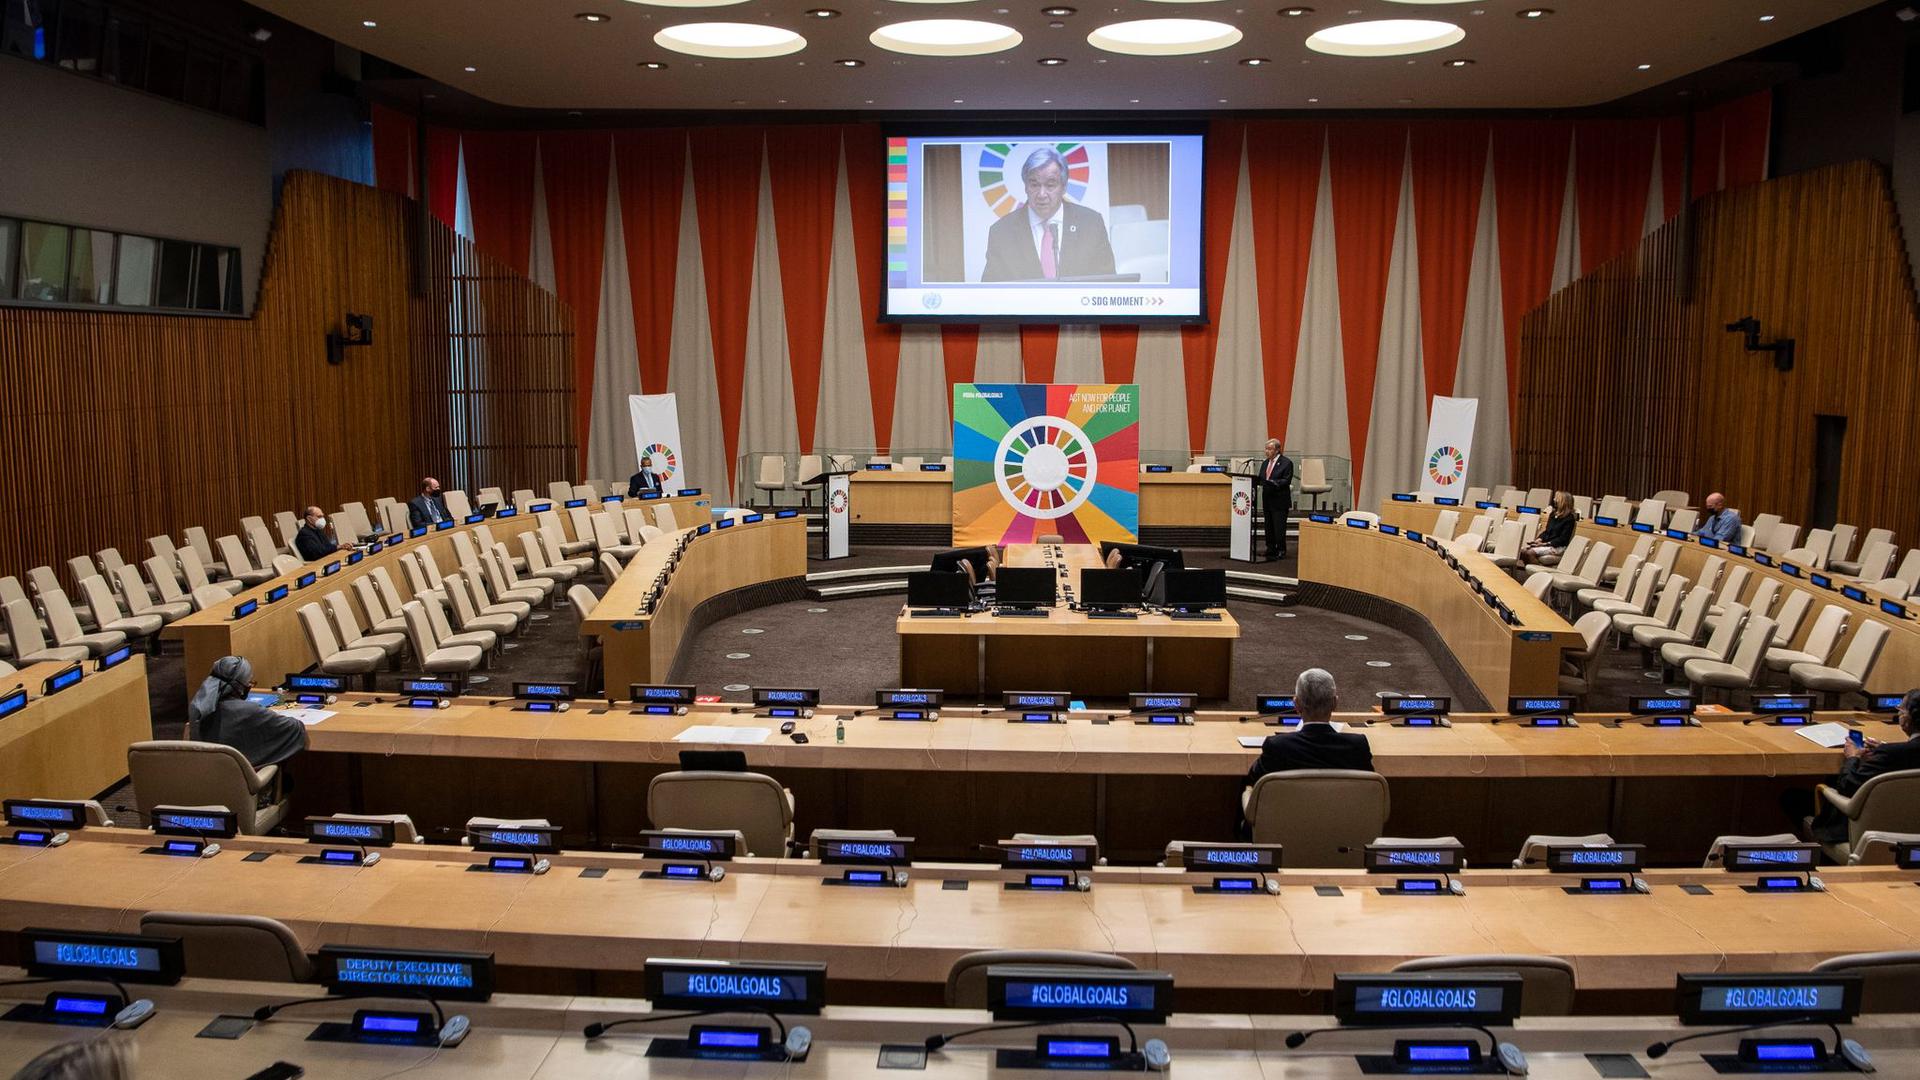 Zum Auftakt des Festaktes in New York beschwor UN-Generalsekretär António Guterres die internationale Zusammenarbeit.